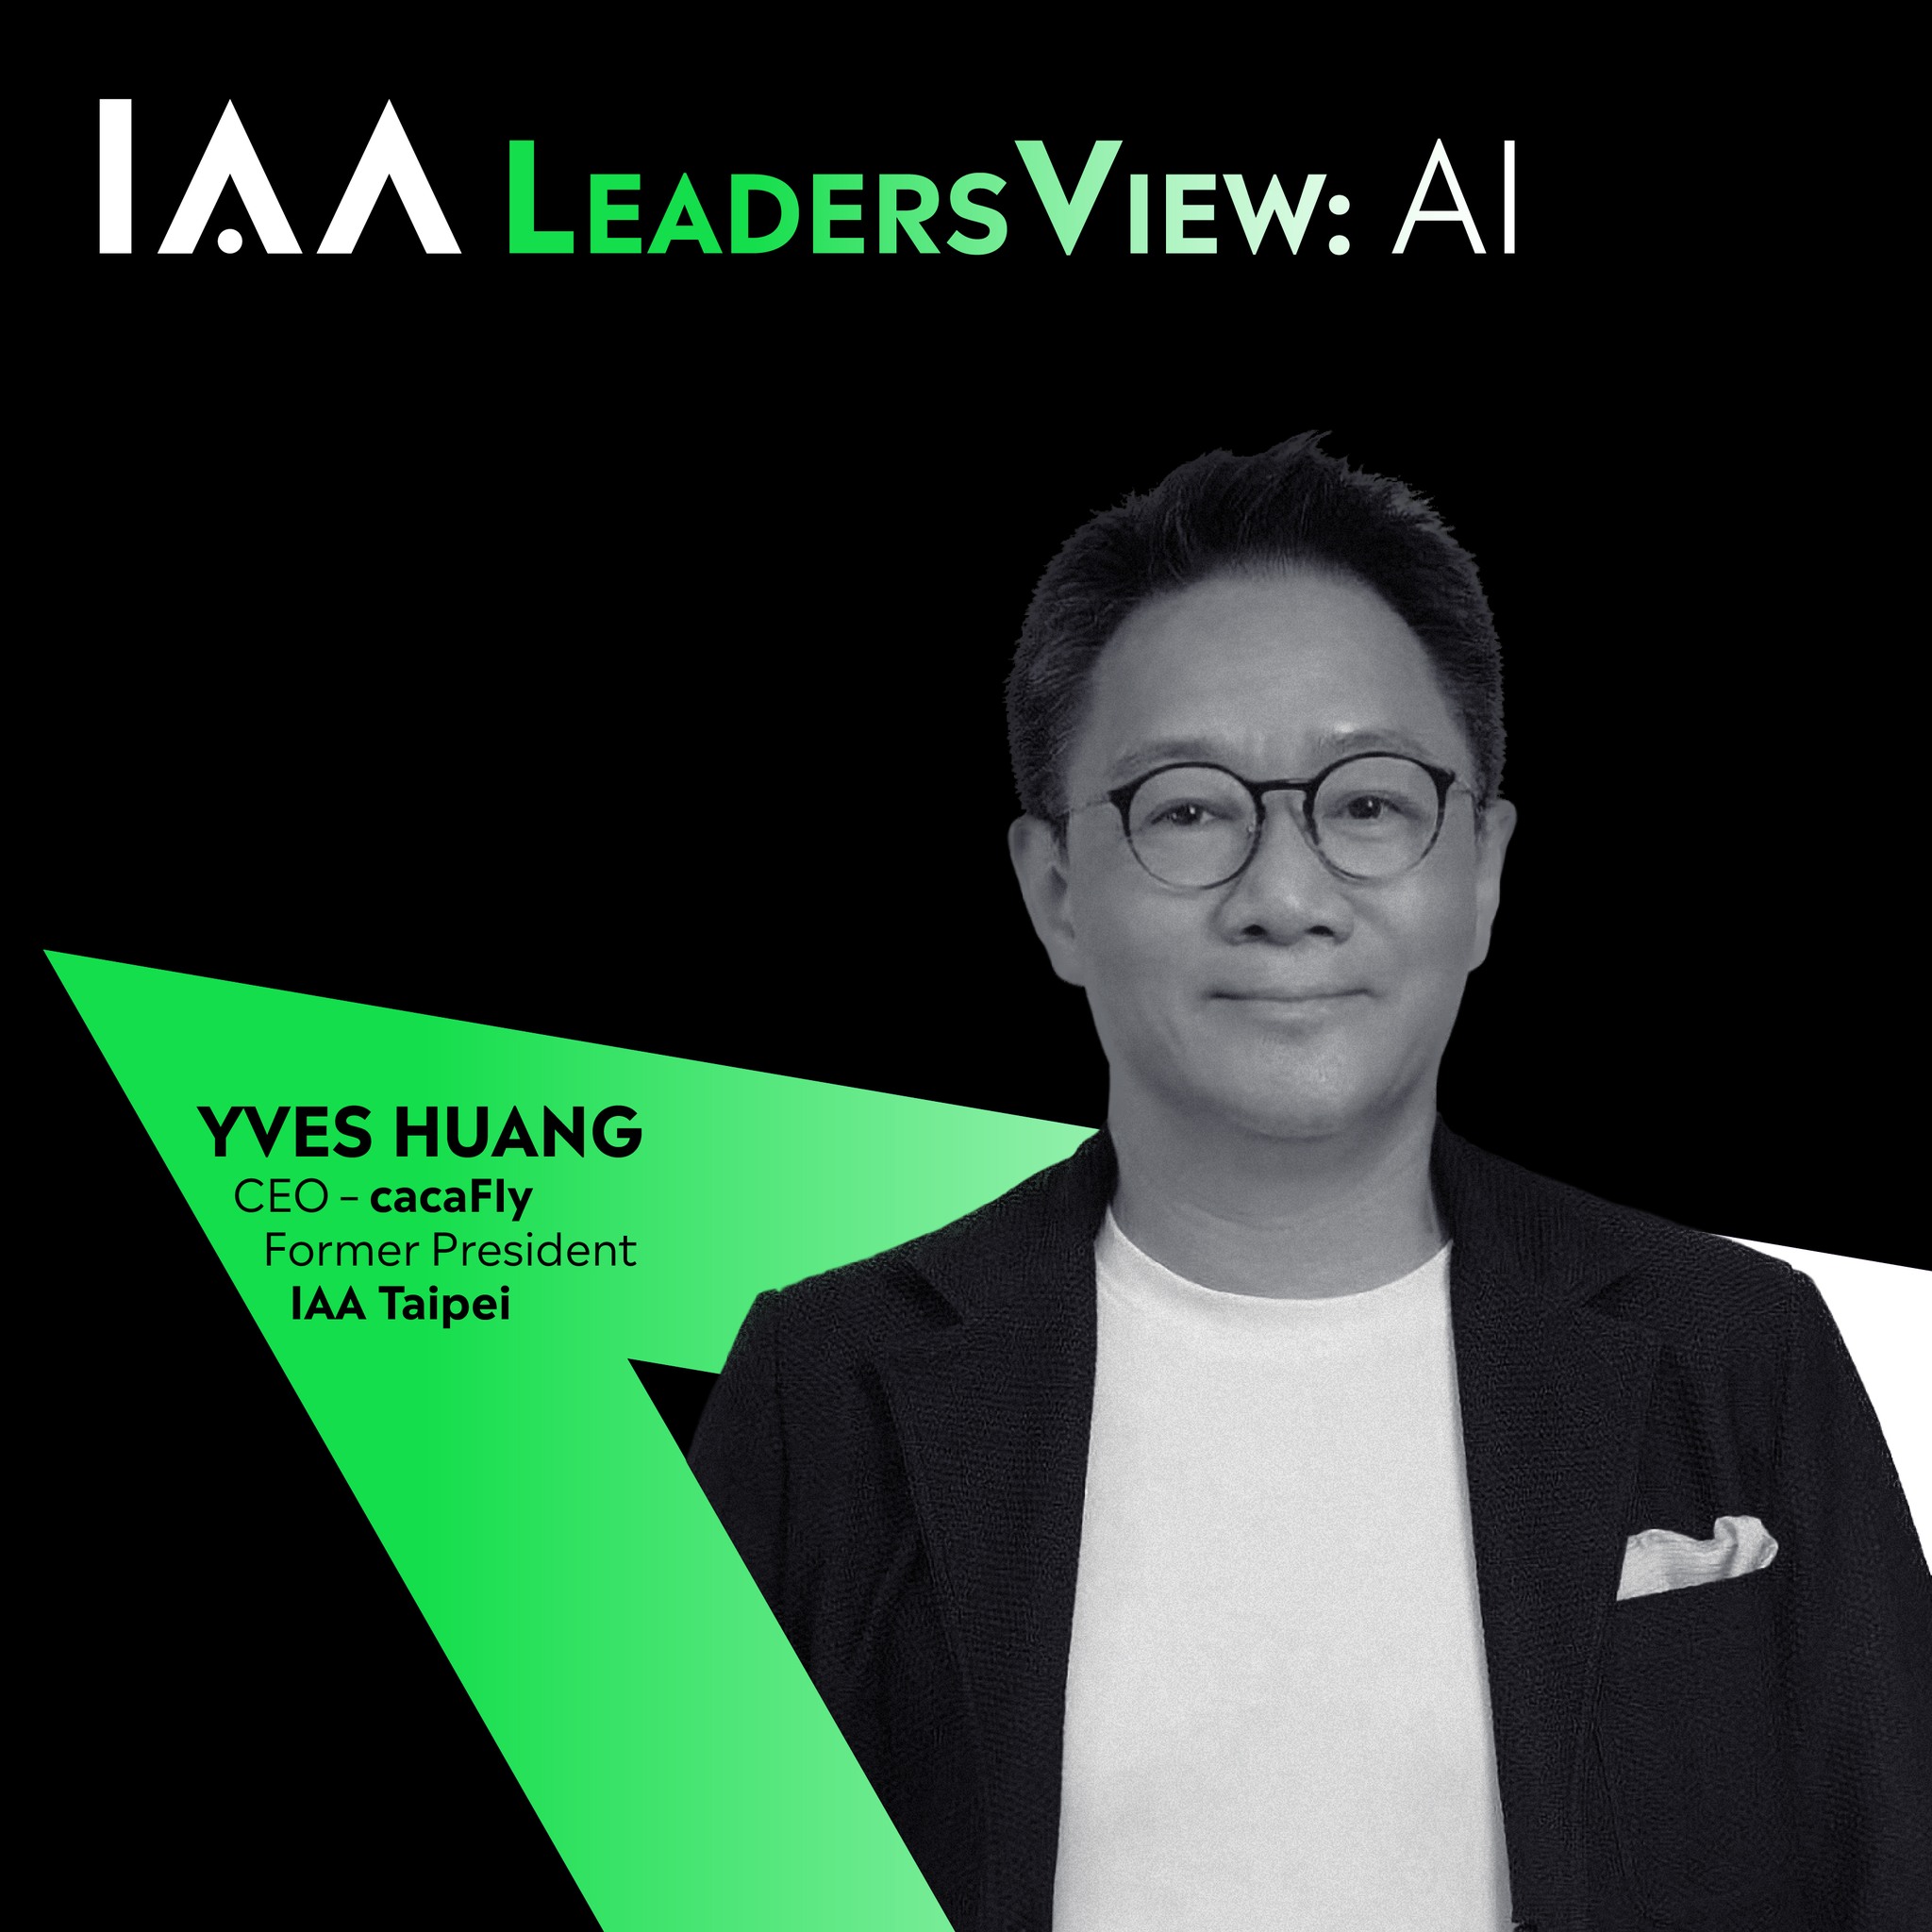 本分會Yves前理事長參與 “IAA Global LeadersView - AI”，向全球推廣發表對 AI 的觀點